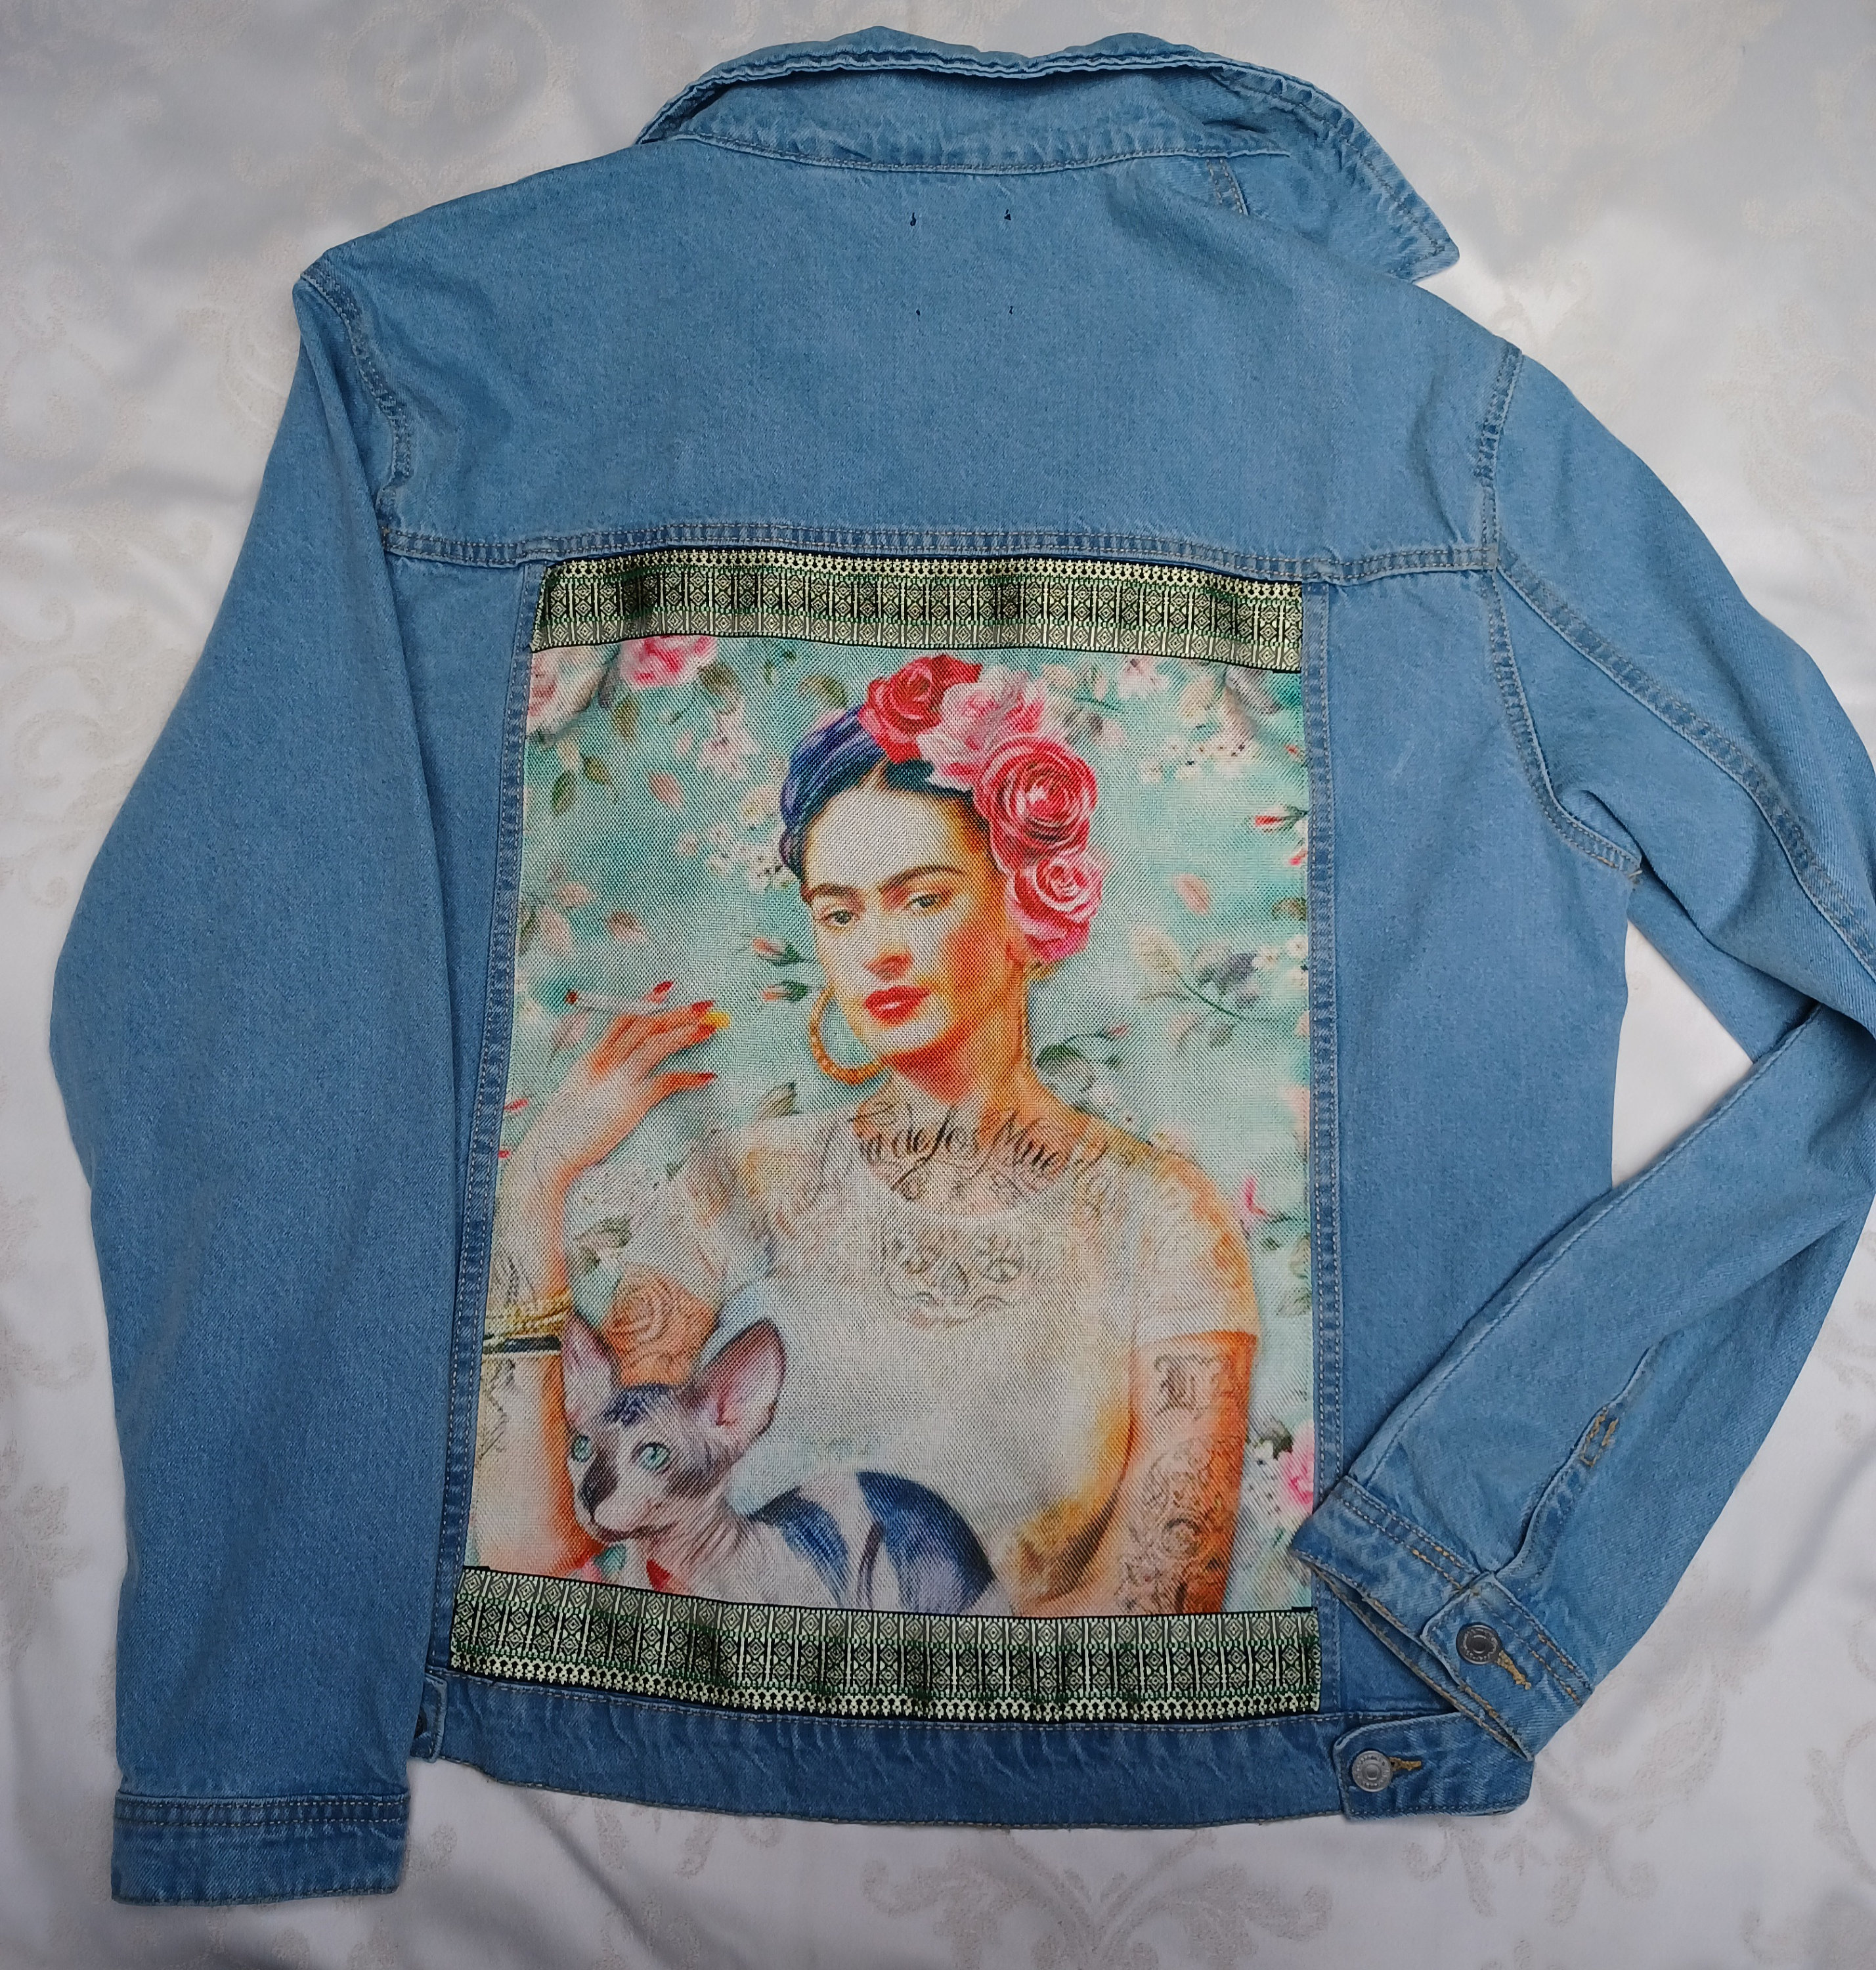 Frida kahlo upcycled denim jacket frida kahlo | Etsy